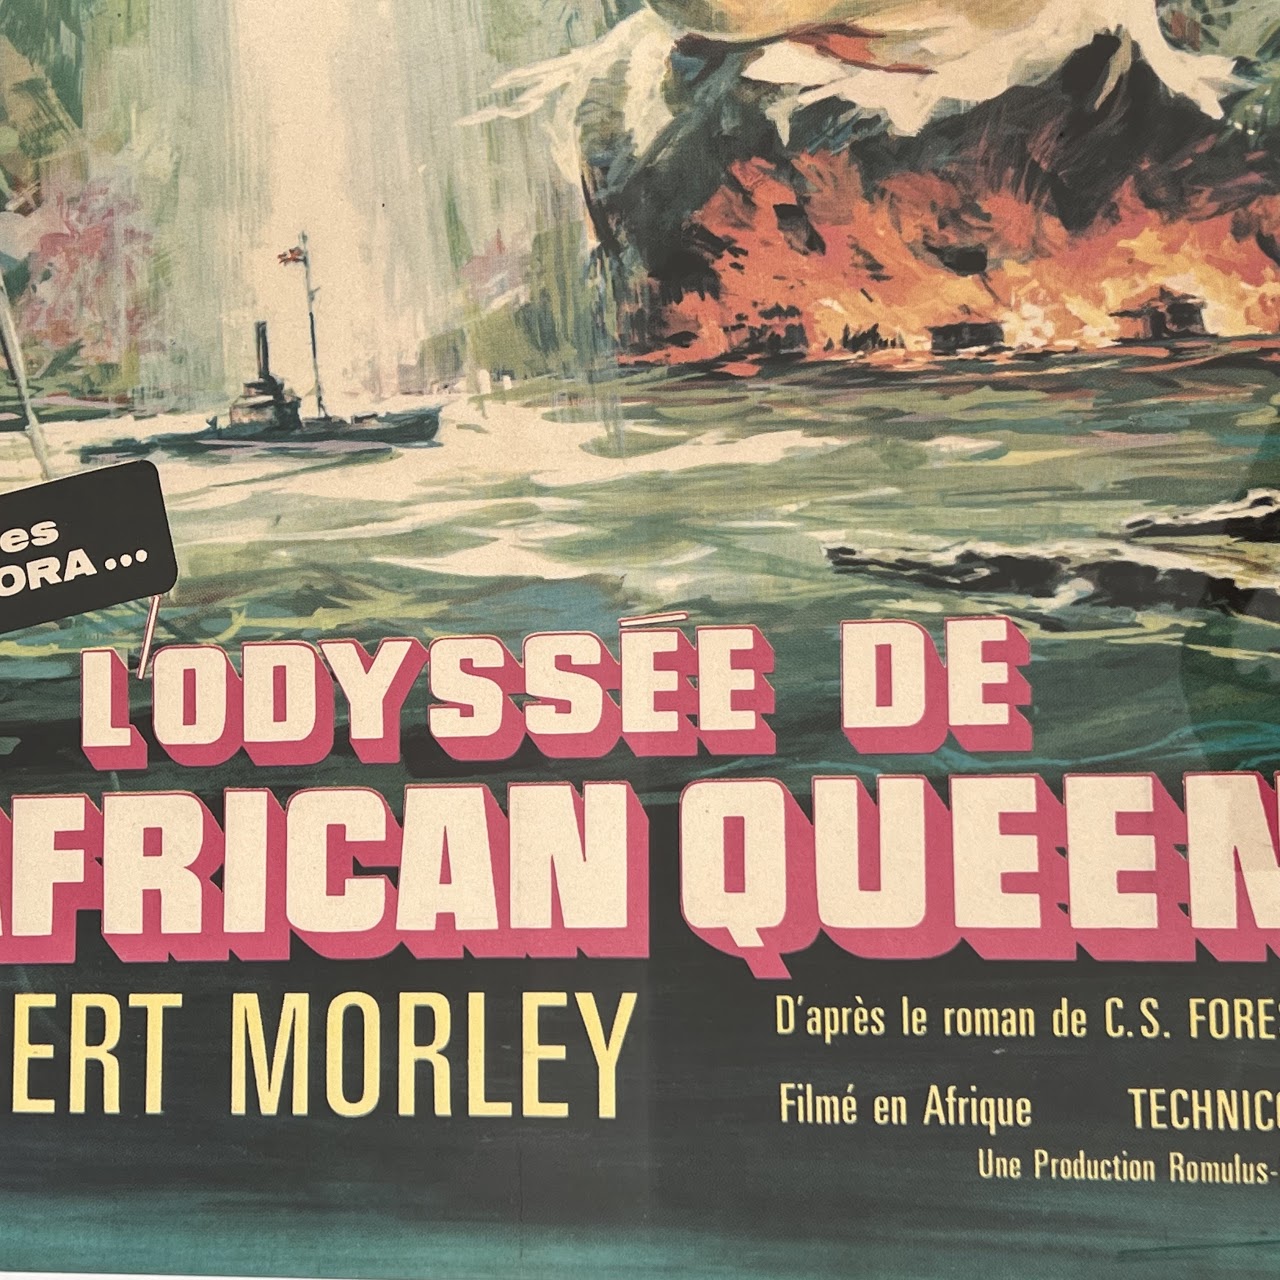 Bogart & Hepburn 'The African Queen' Original French Movie Poster